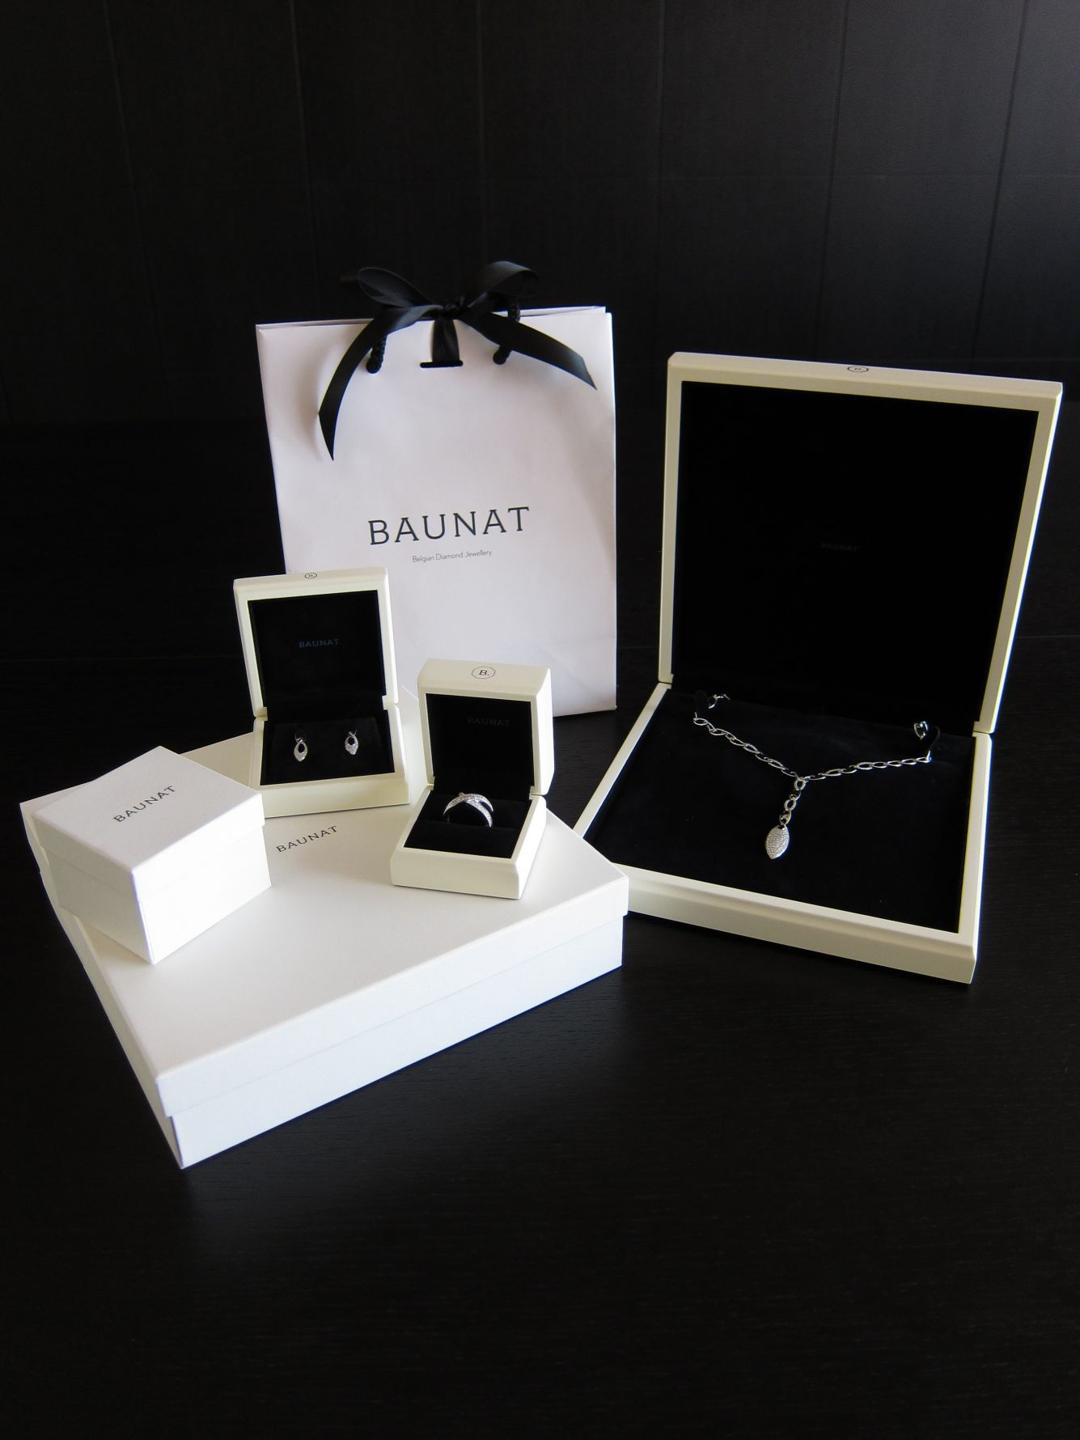 Ook juwelen op maat worden verzekerd en gratis geleverd in BAUNAT-verpakkingsdozen.